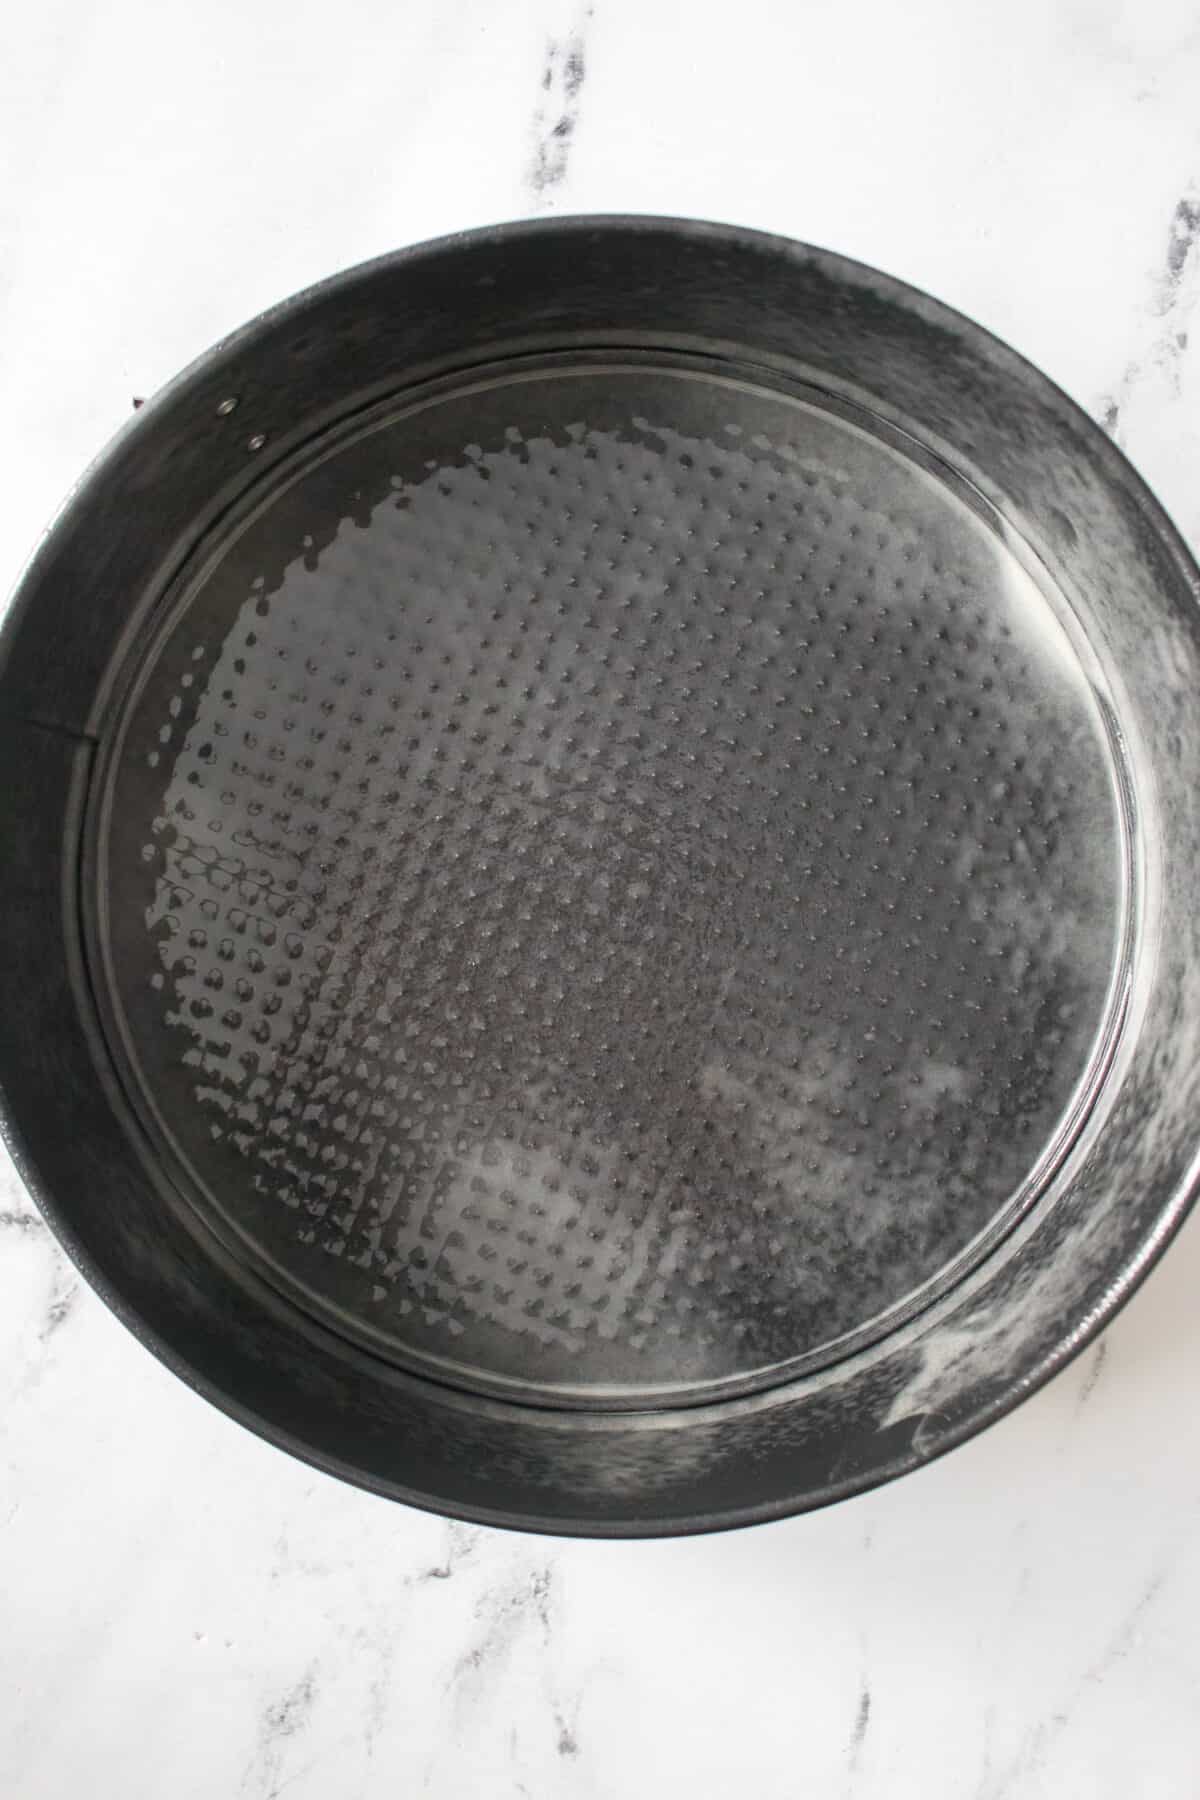 9" springform pan sprayed with baking spray